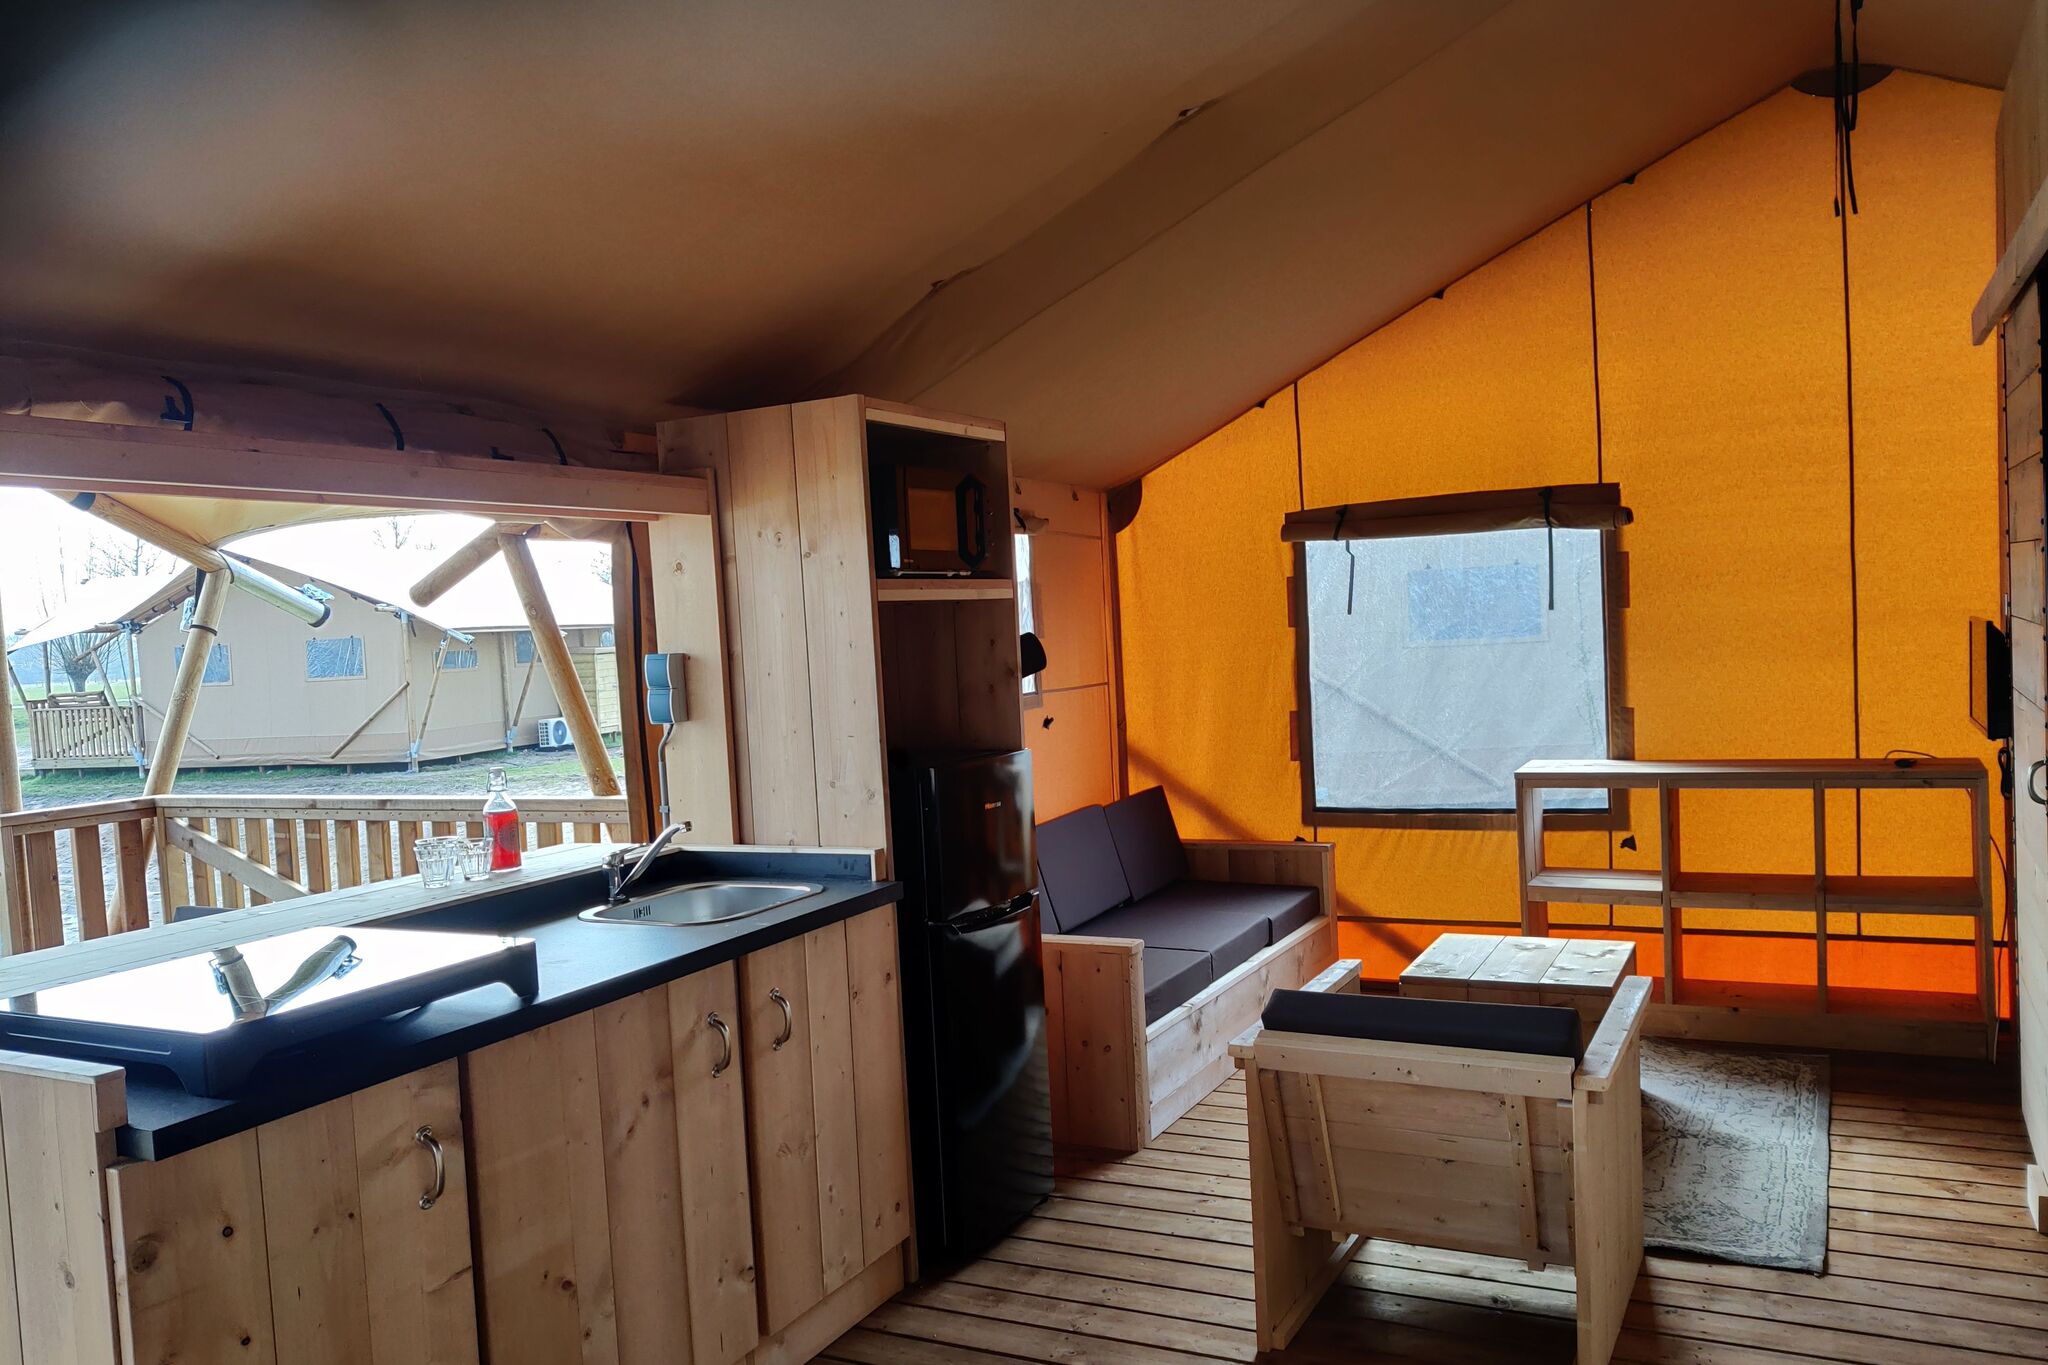 Tente glamping avec climatisation et vue sur le Kuinderbos